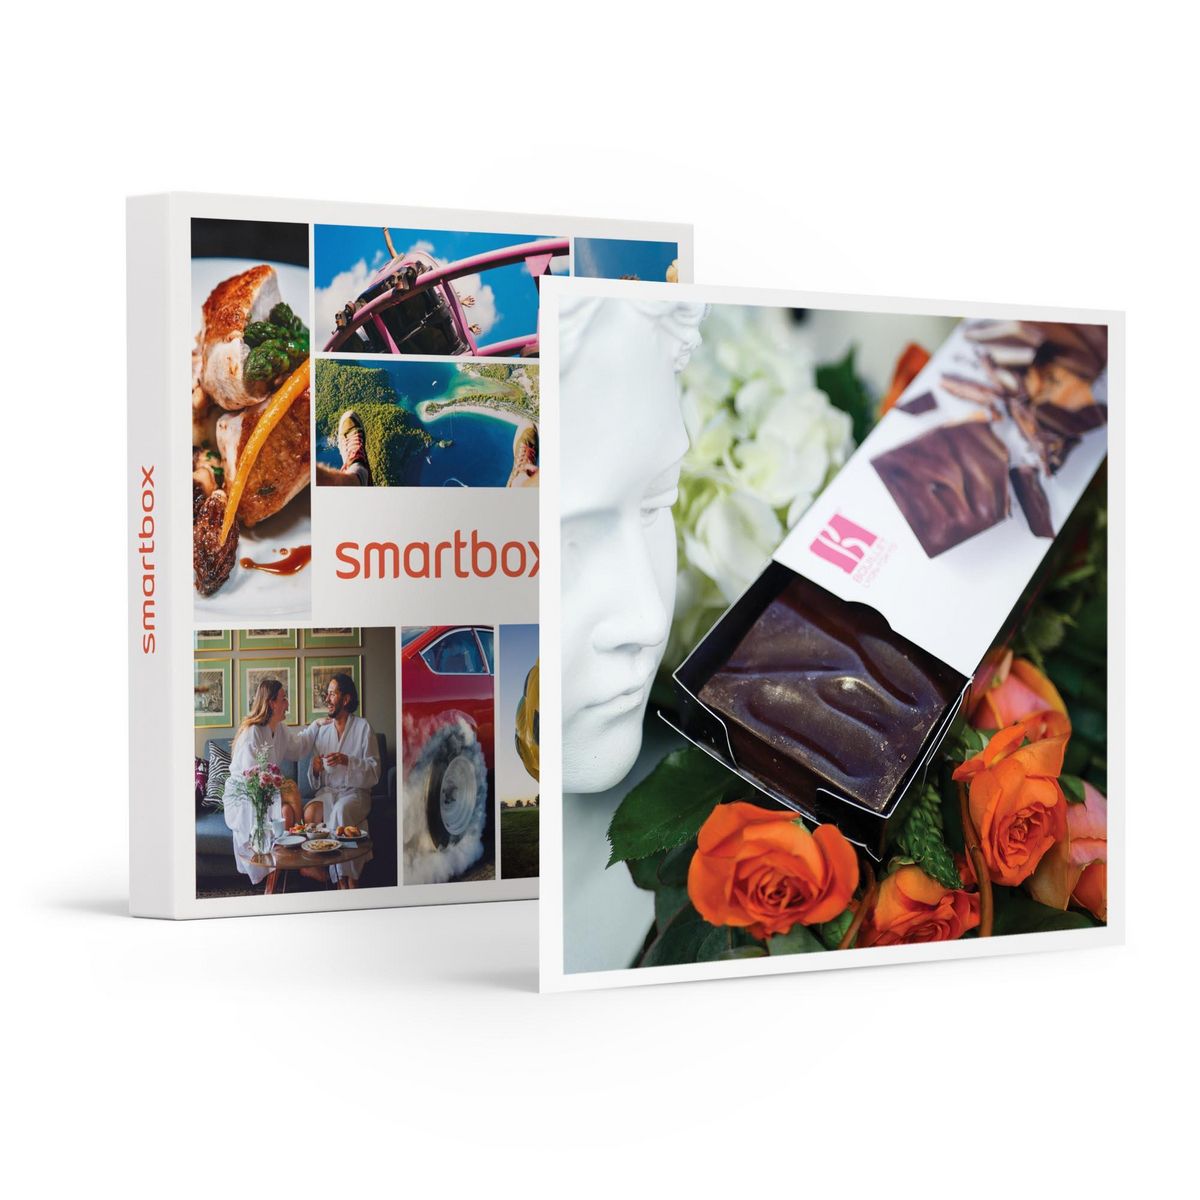 Smartbox Coffret gourmand : assortiment de délicieux produits livré à domicile - Coffret Cadeau Gastronomie